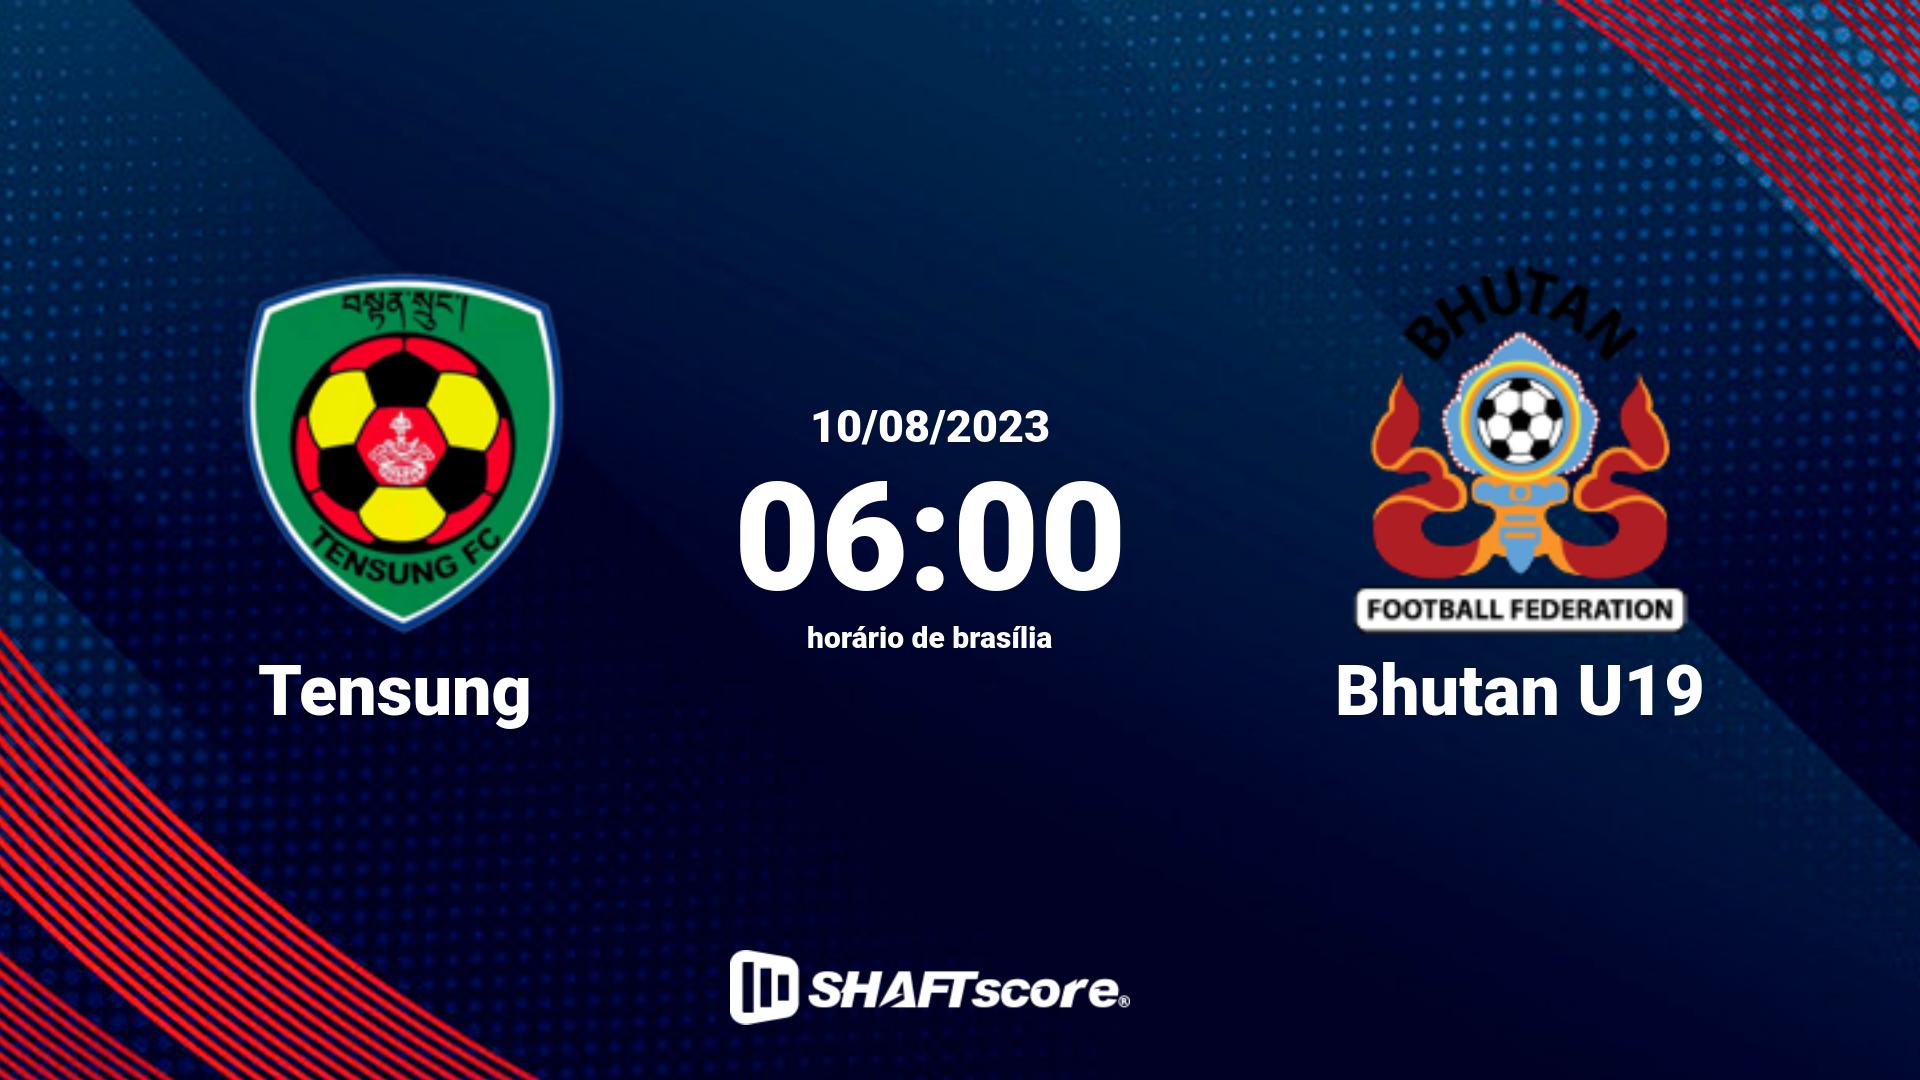 Estatísticas do jogo Tensung vs Bhutan U19 10.08 06:00